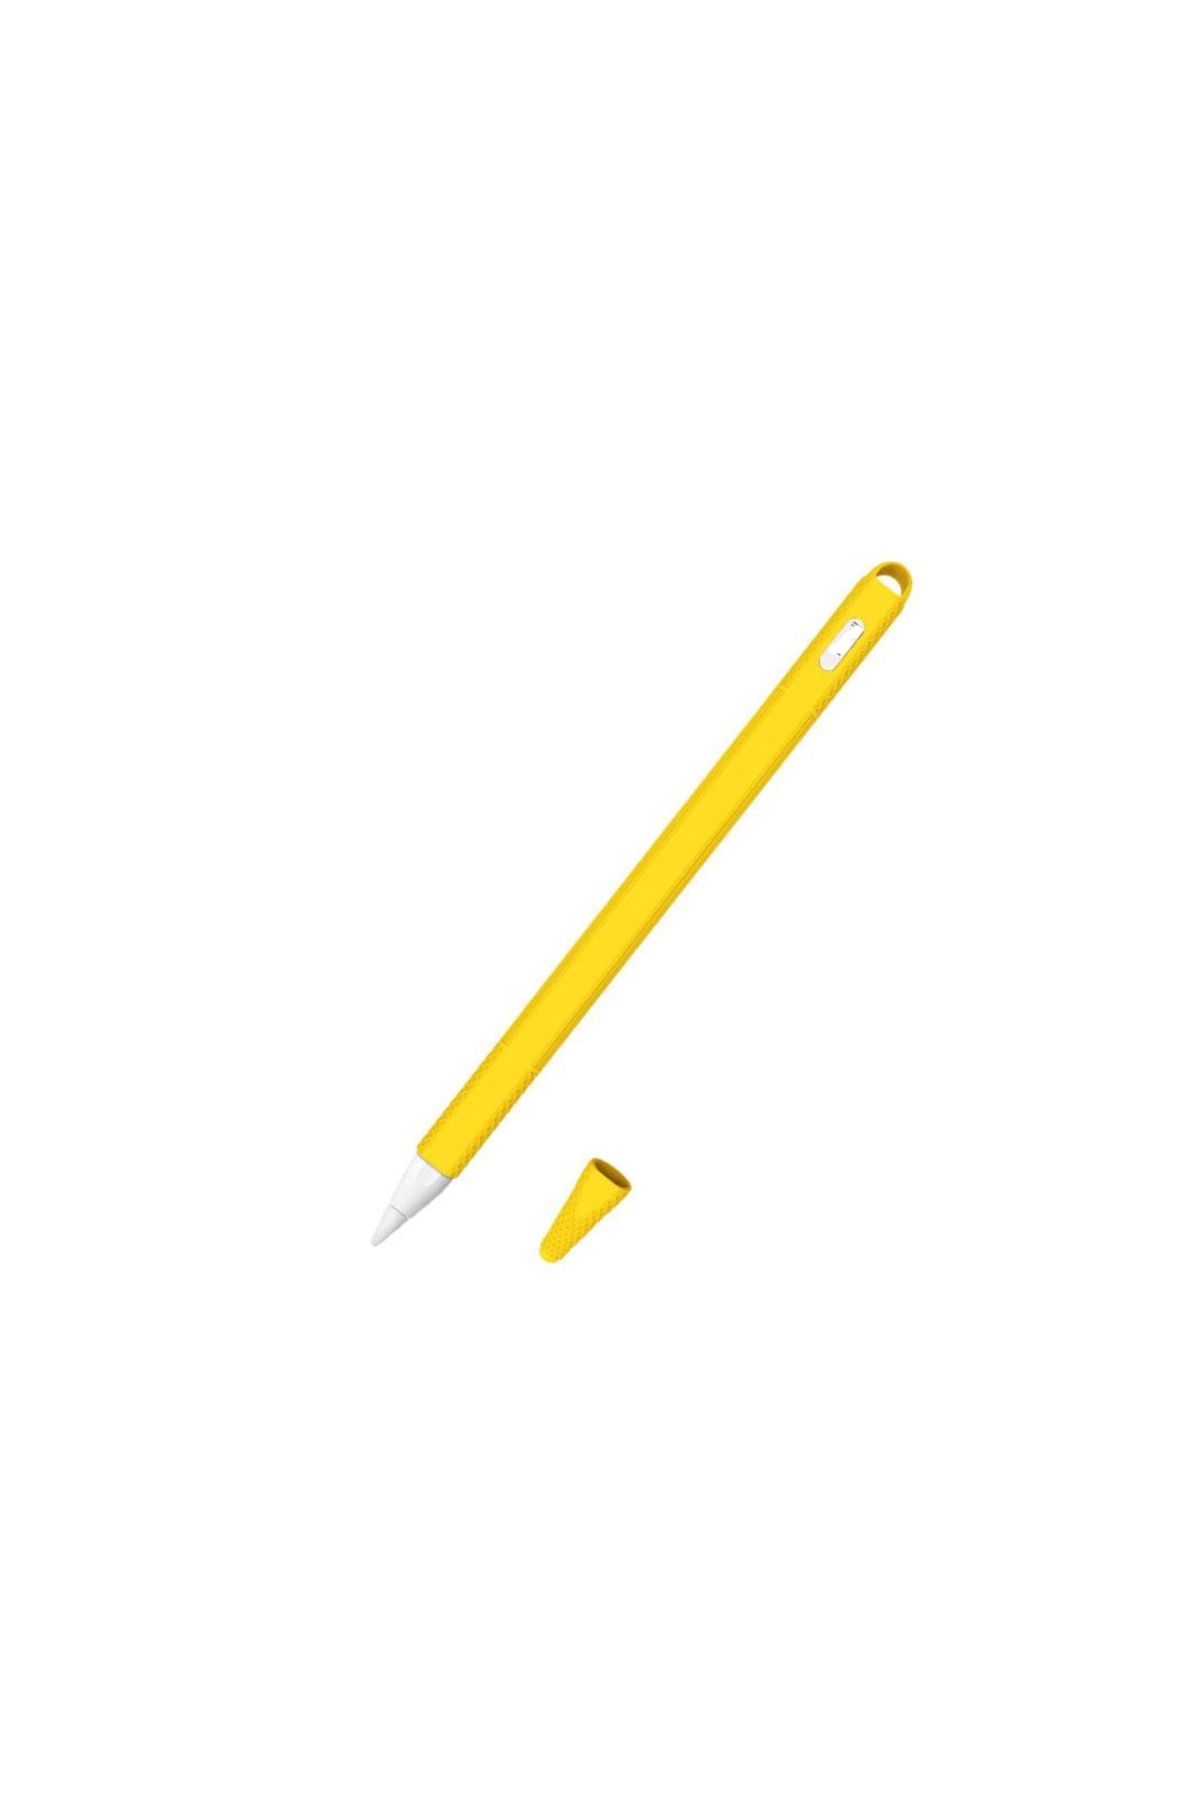 NANOSPACE Apple Pencil 2 İle Uyumlu Renkli Koruyucu Kaymaz Tırtıklı Silikon Kılıfı ( Ürün Kalem Değildir )